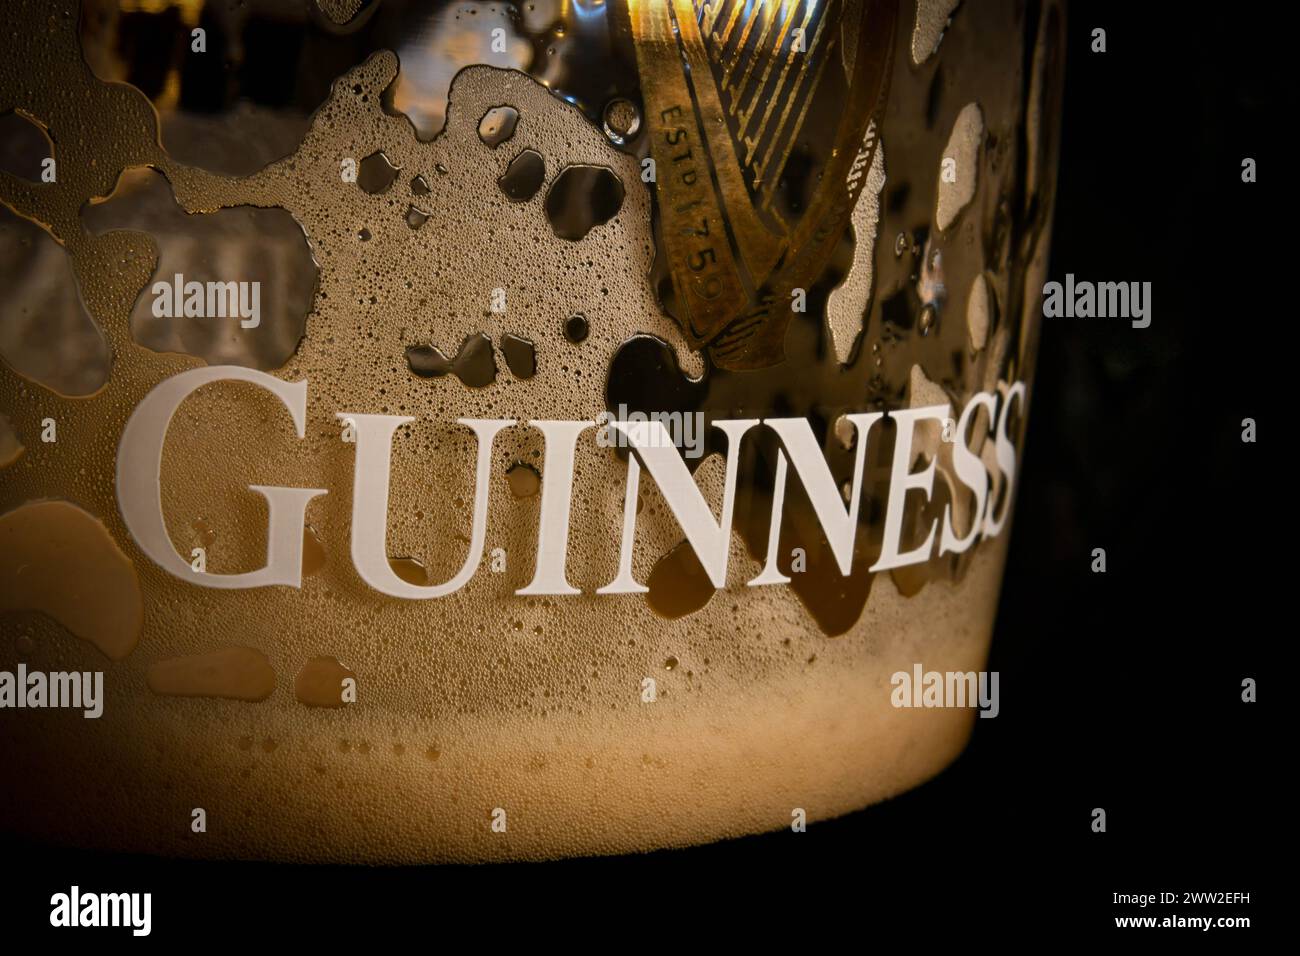 Guinness Stock Photo